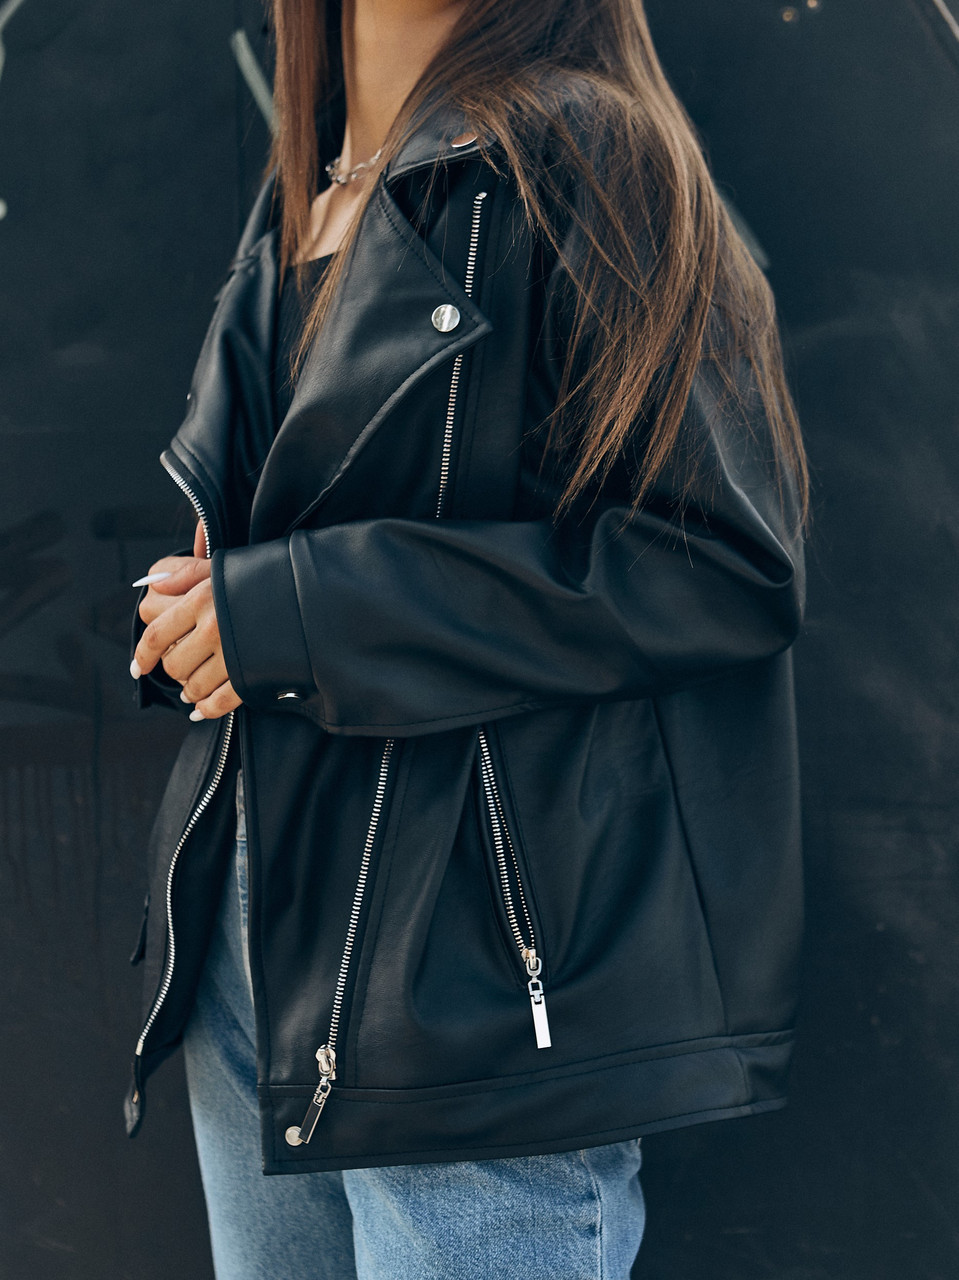 Косуха оверсайз жіноча, видовжена чорна марка TUR модель Аманда, розмір S, M TURWEAR - Фото 6